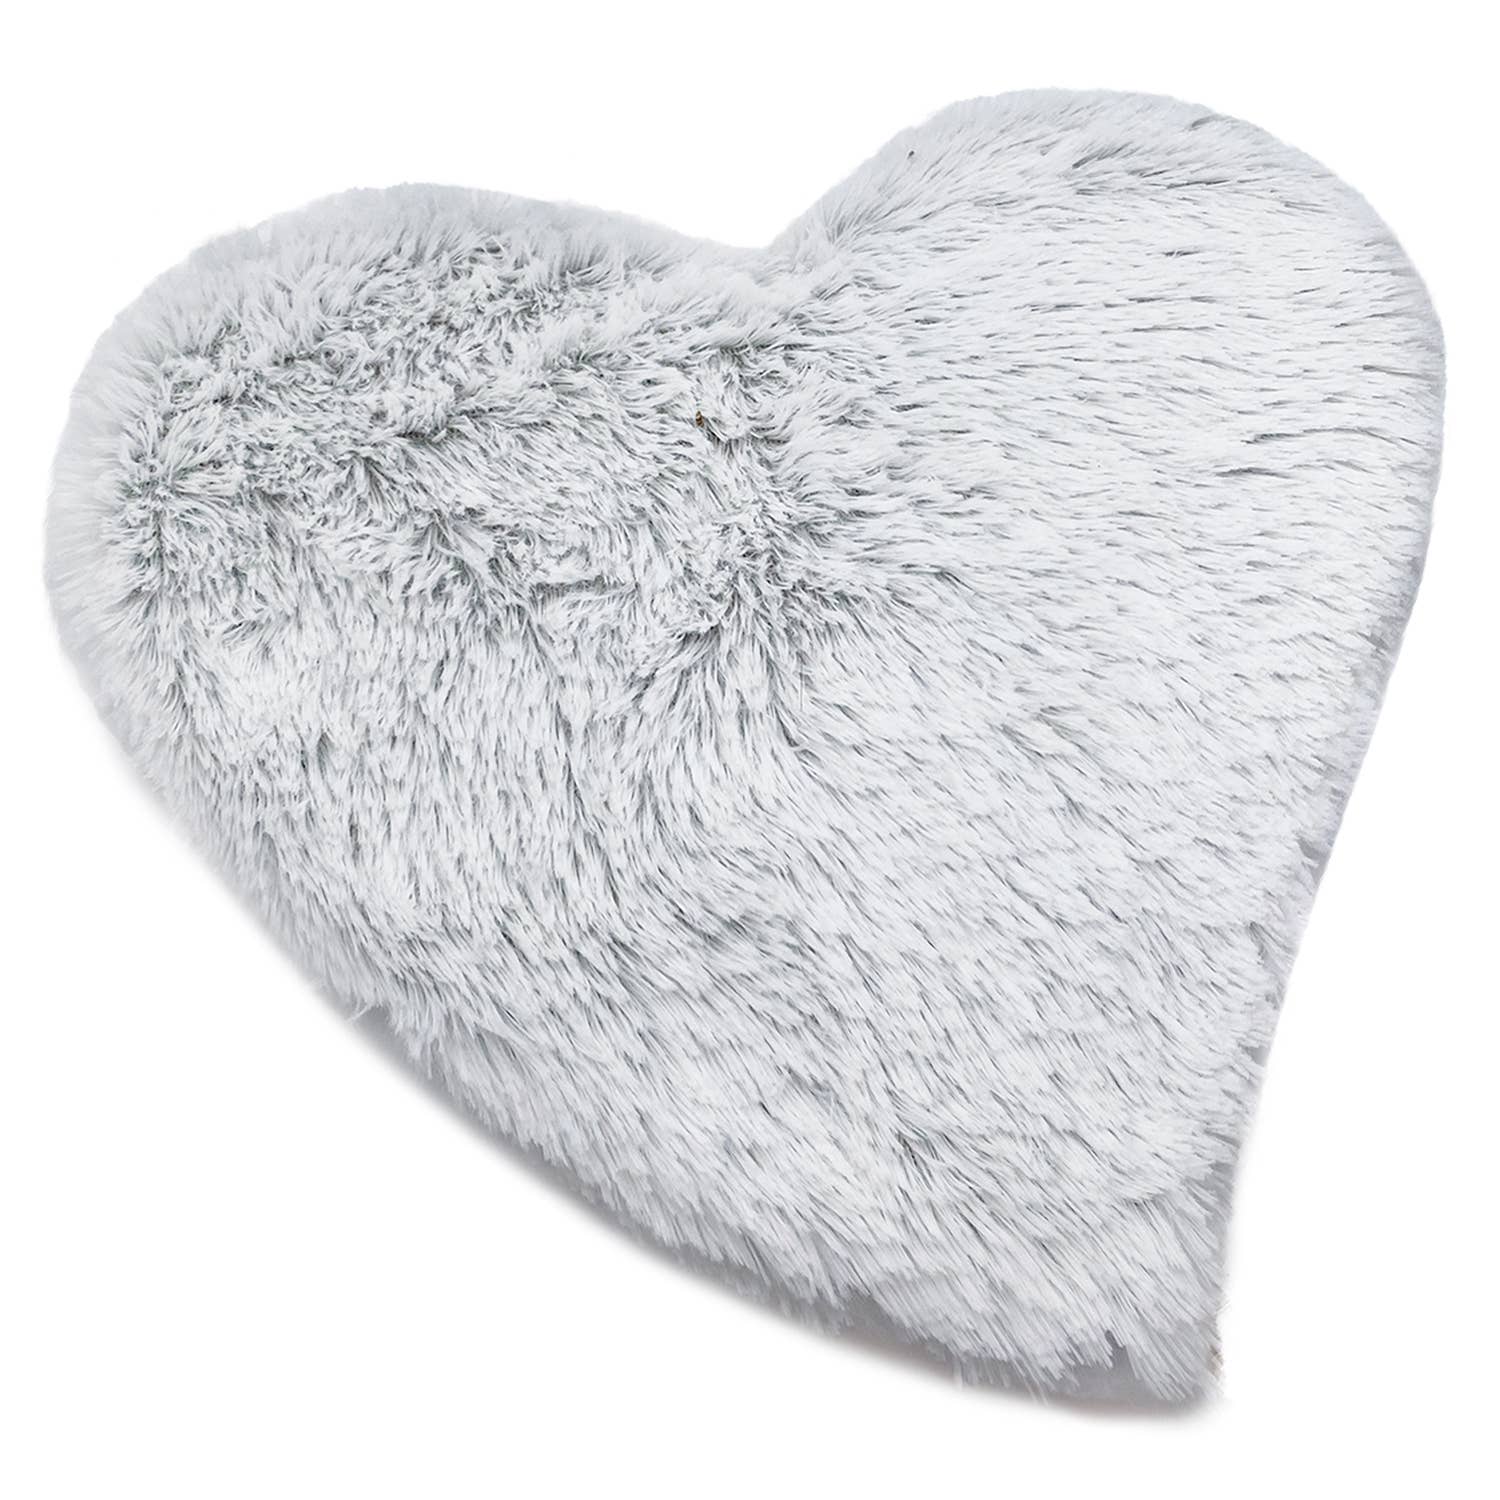 Marshmallow Gray Heart Heat Pad